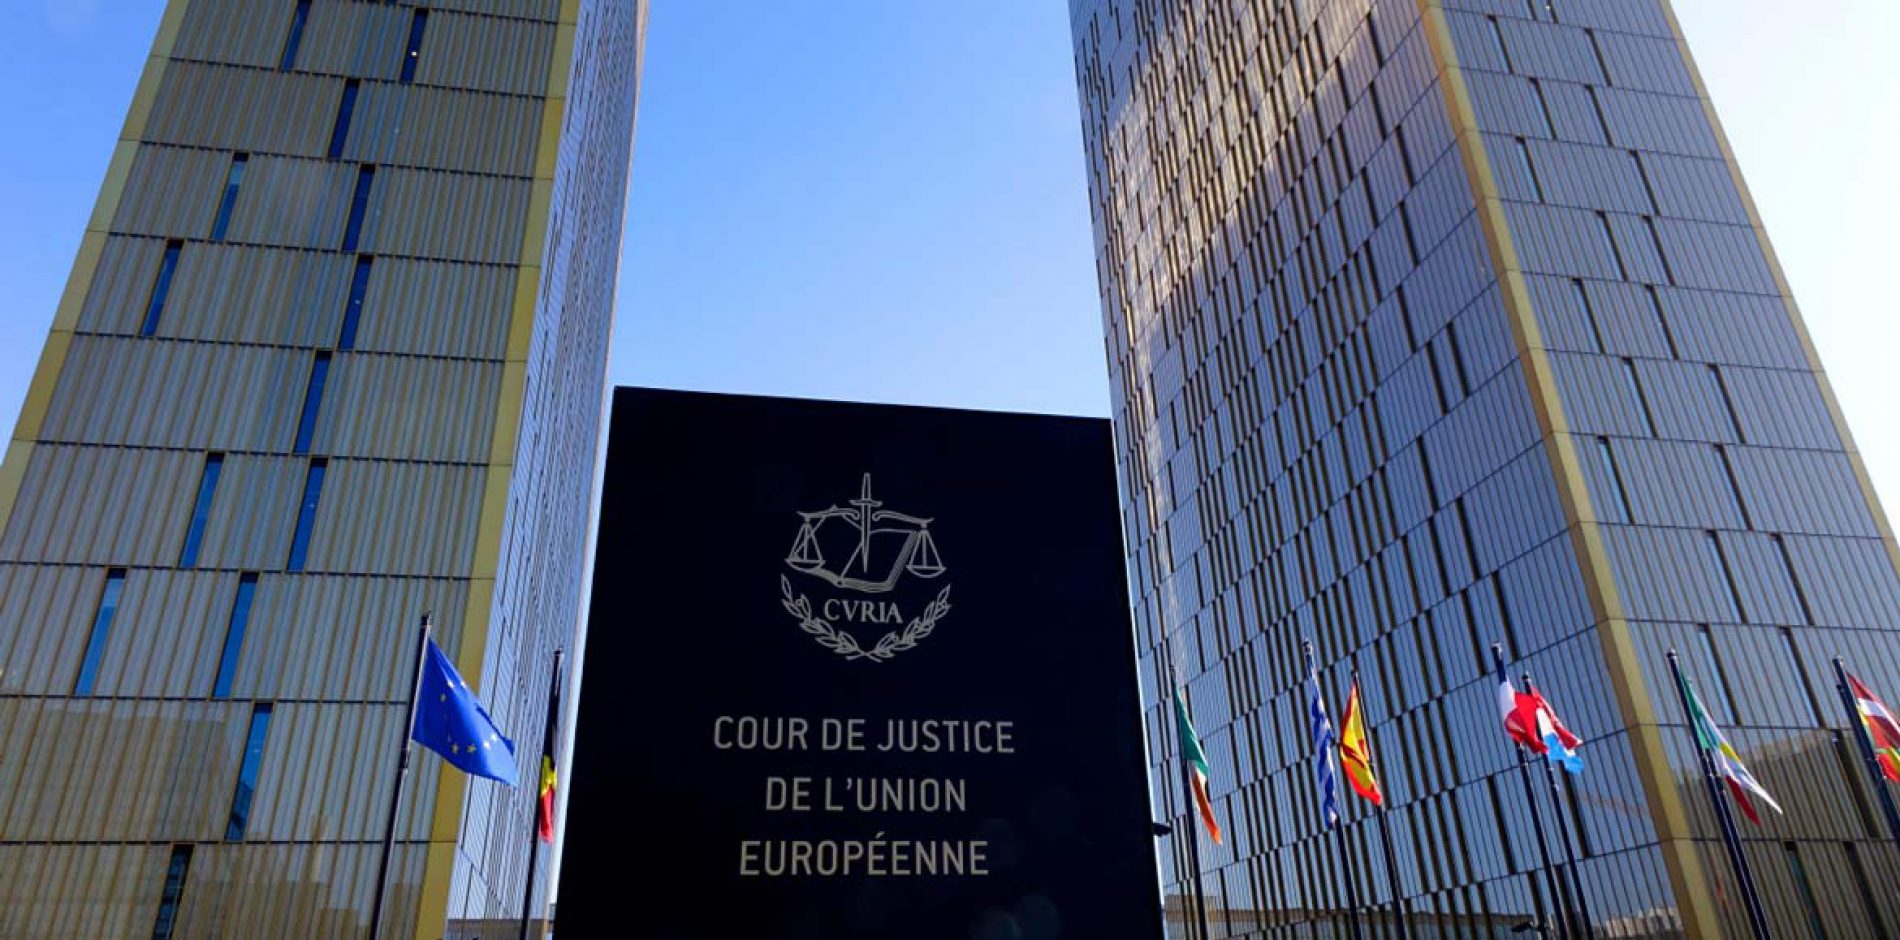 Contratti a tempo determinato: la corte europea contro gli abusi [E.Massi]